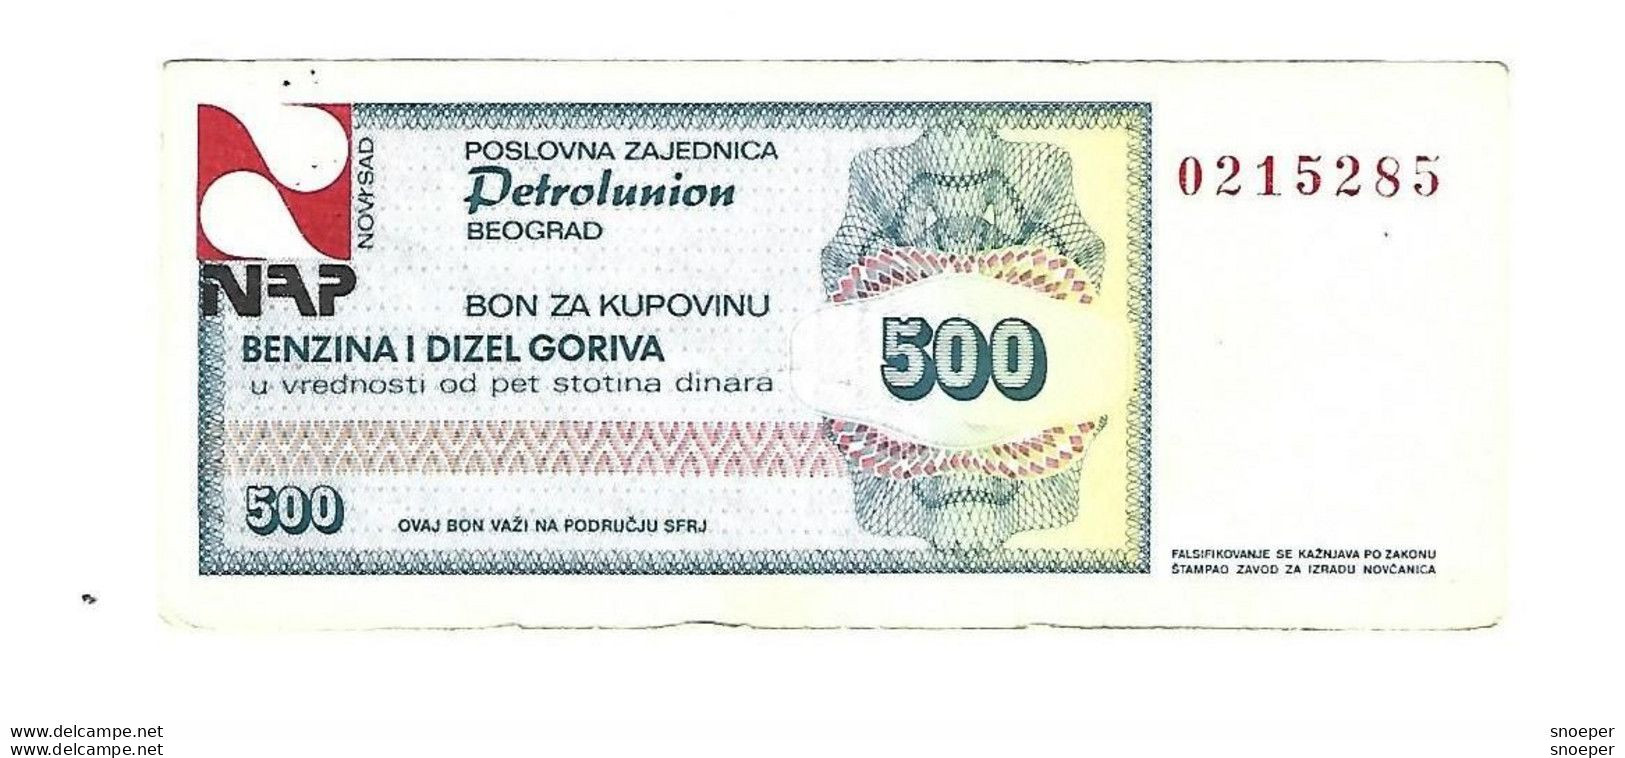 Serbia Beograd Petrolunion  Bon 500 Dinara  Benzin /diezel  S62 - Serbia